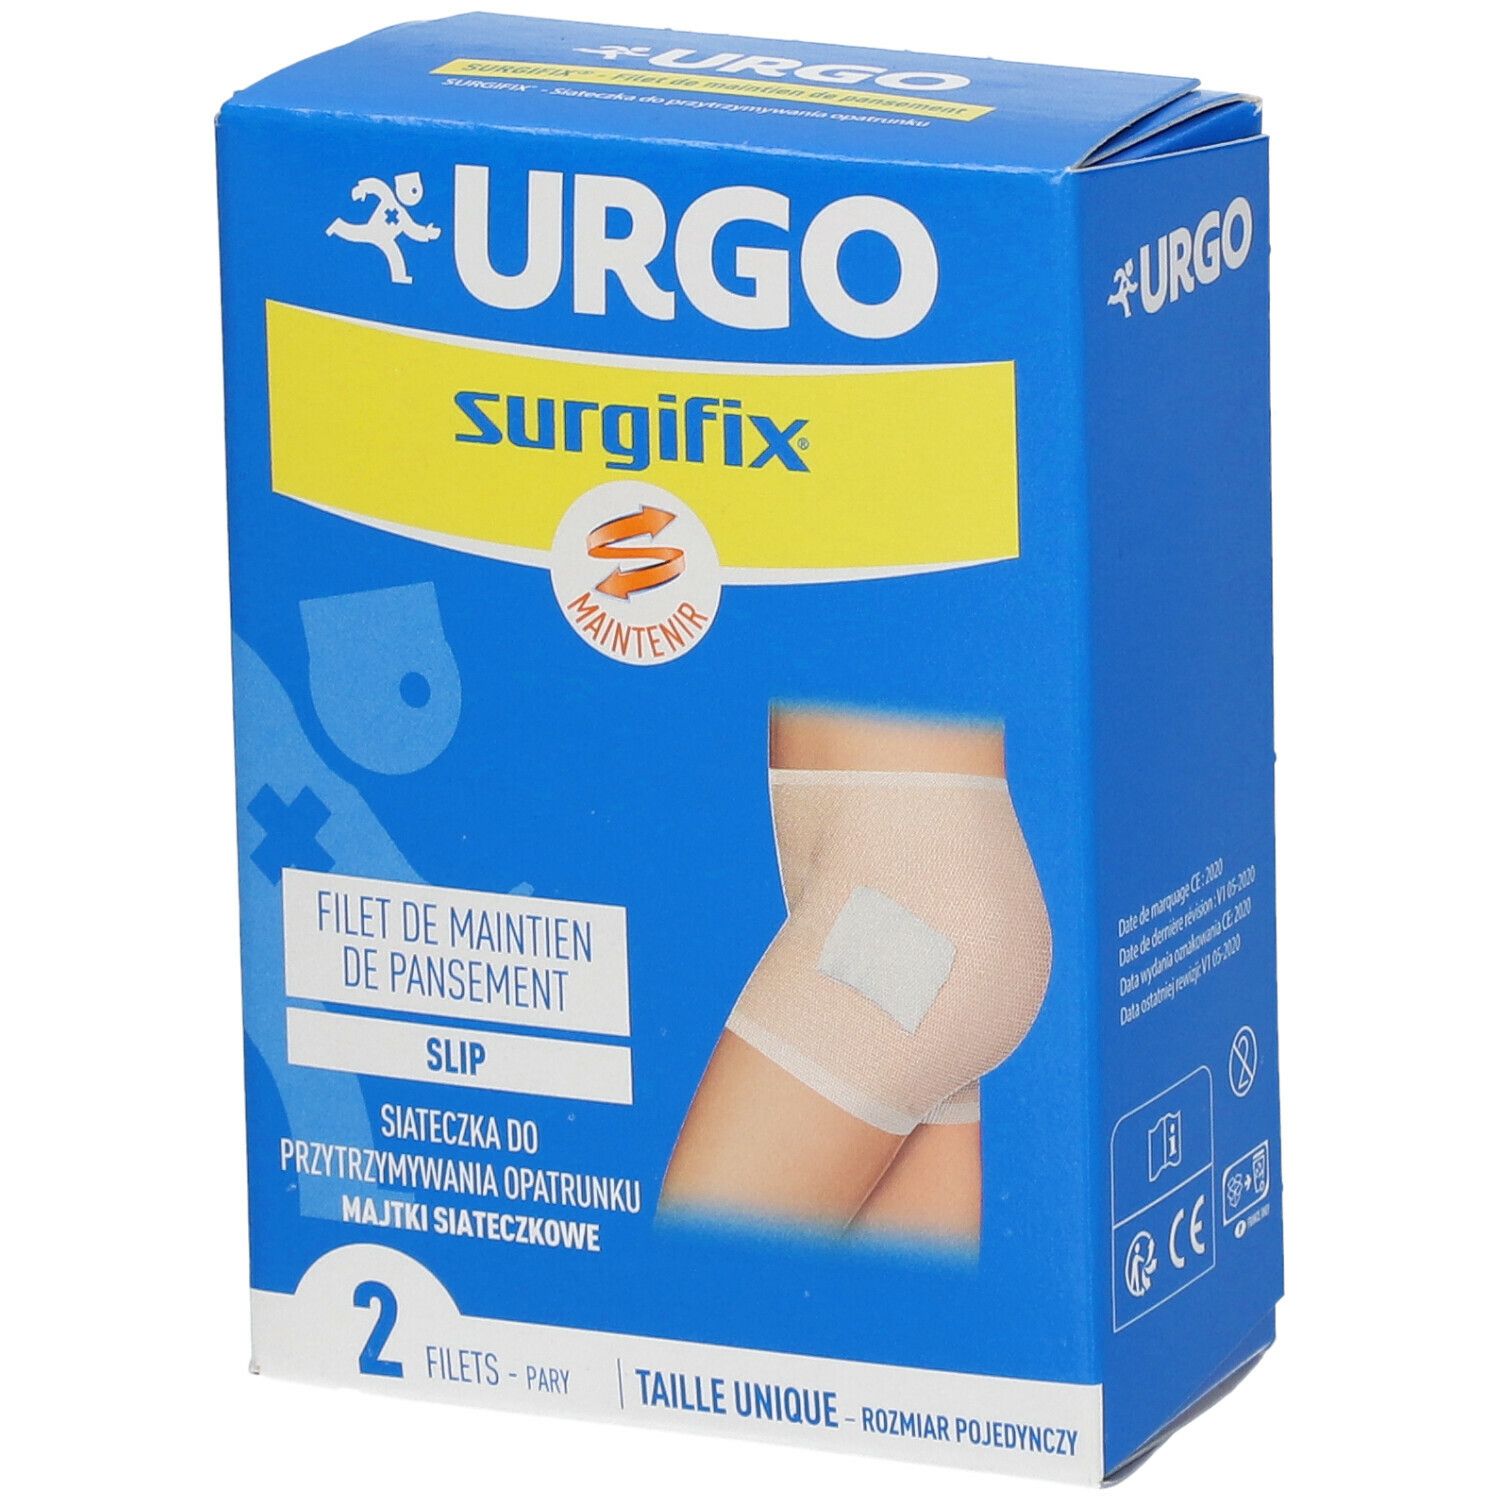 Urgo Surgifix® Filet de Maintien de pansement Slip adultes